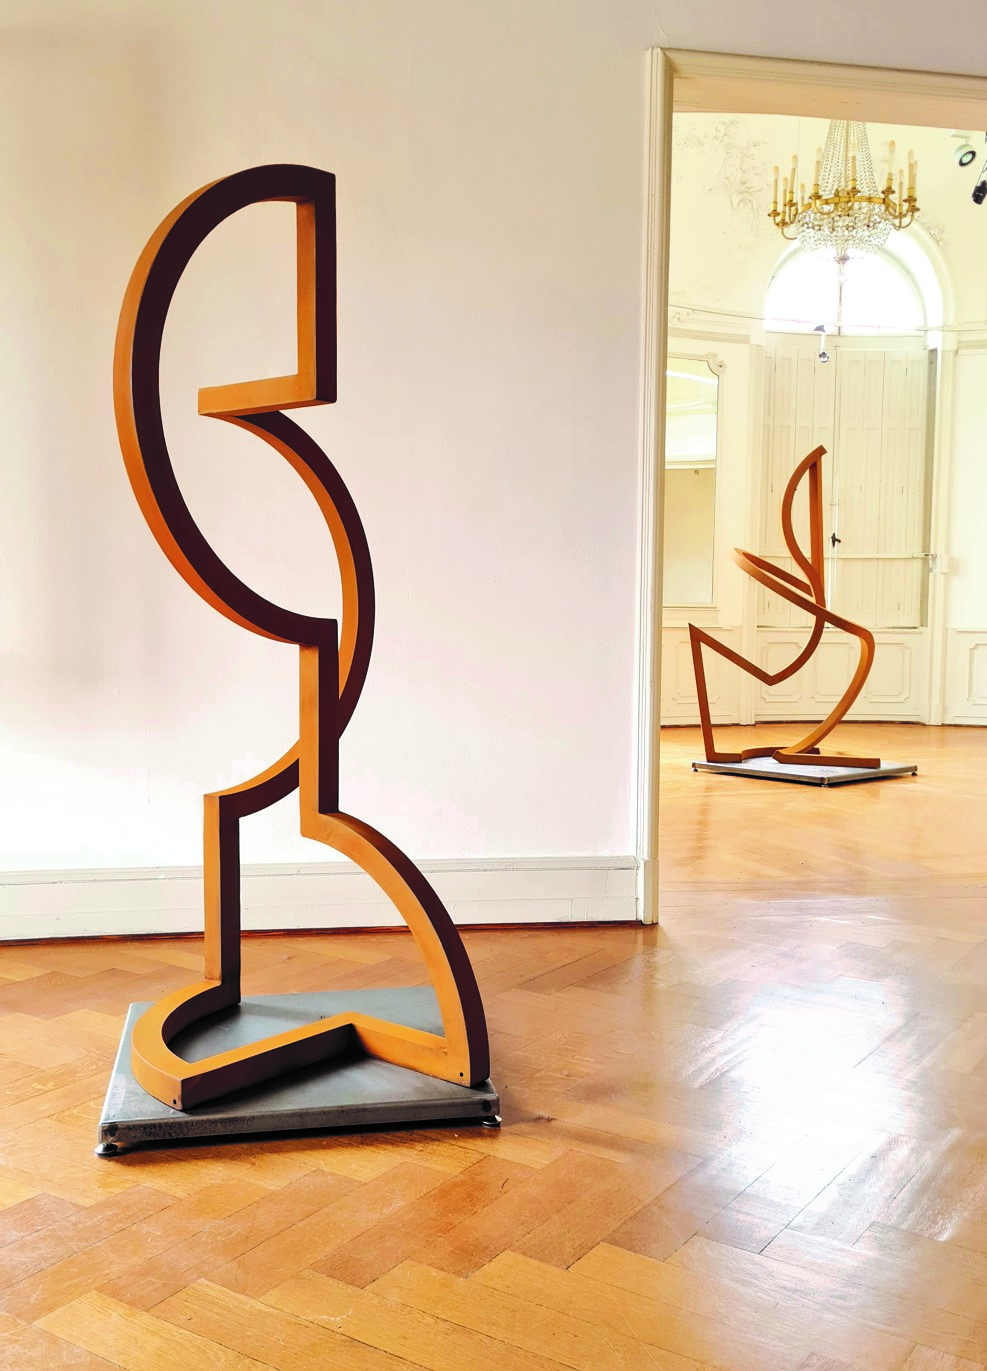 Sonja Edle von Hoeßle, GABURAT, 2022, Cortenstahl, 185 cm x 100 cm x 82 cm, Preis auf Anfrage, Galerie Cyprian Brenner